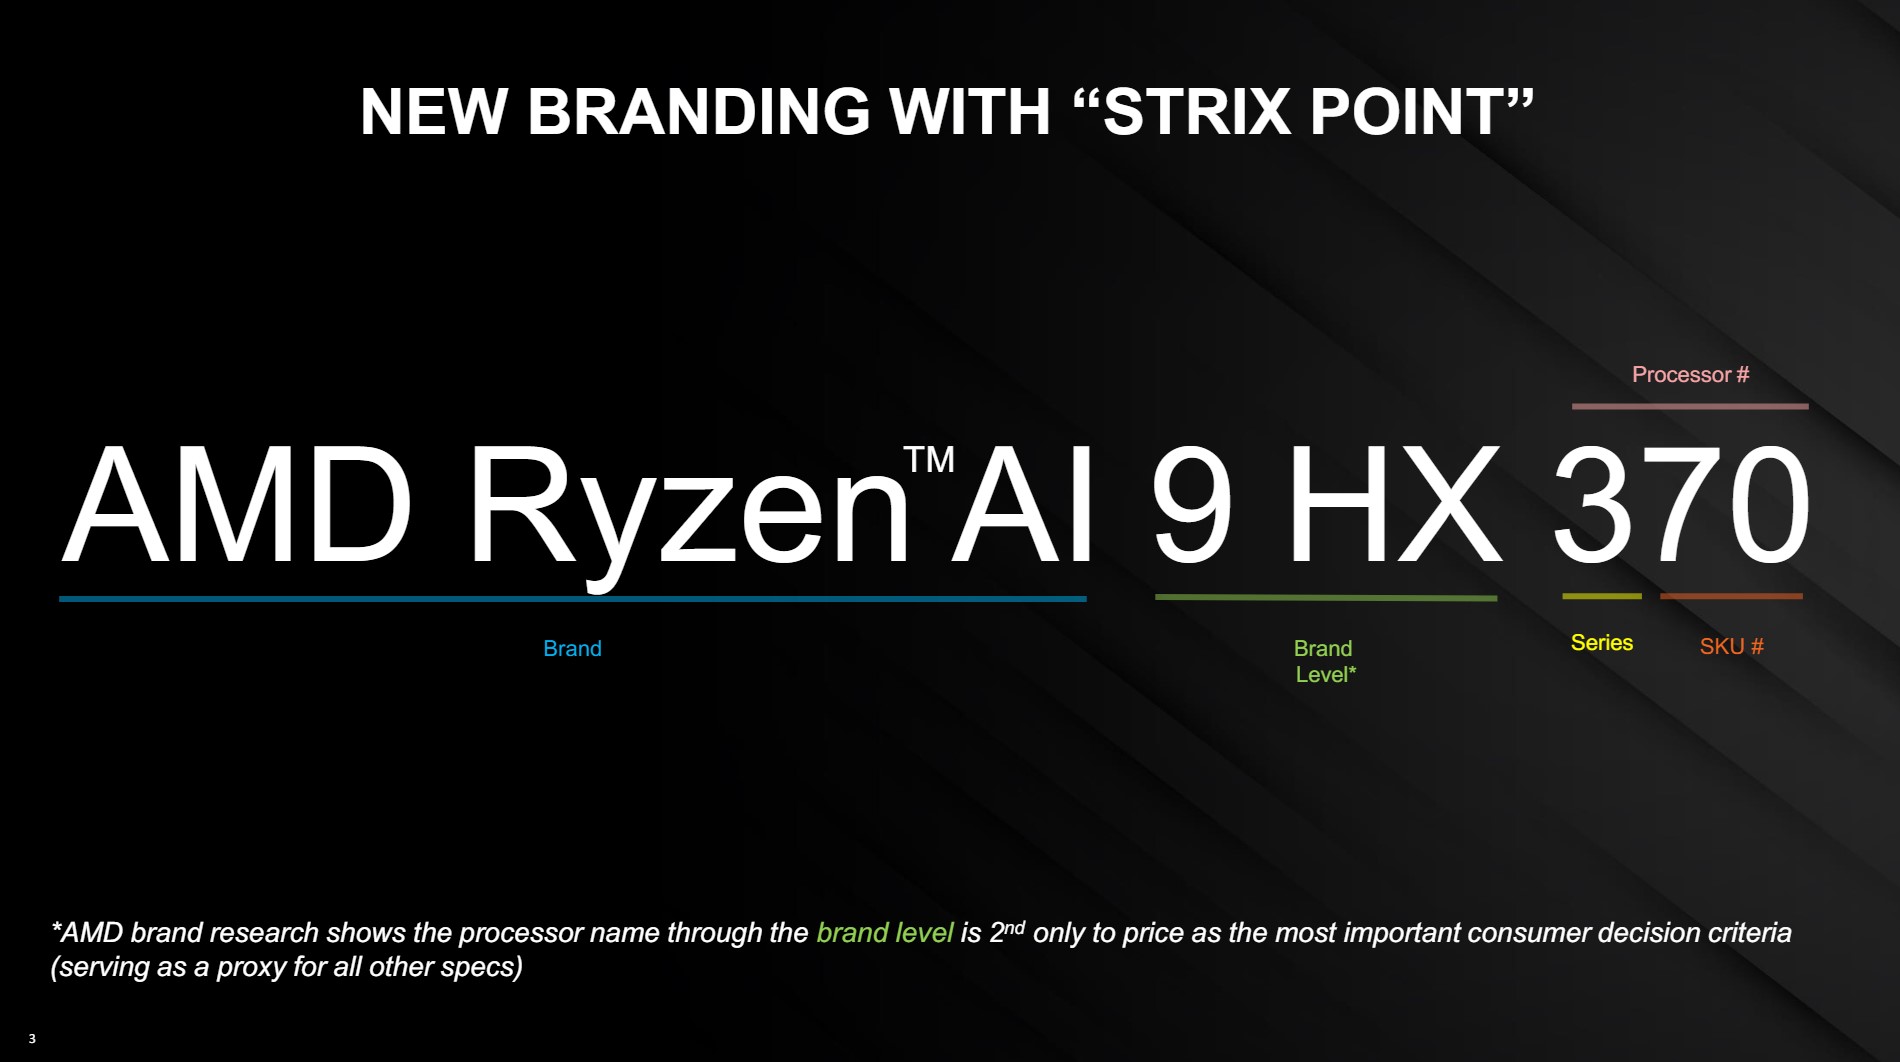 Nueva convención de nomenclatura de AMD para las CPU Strix Point.